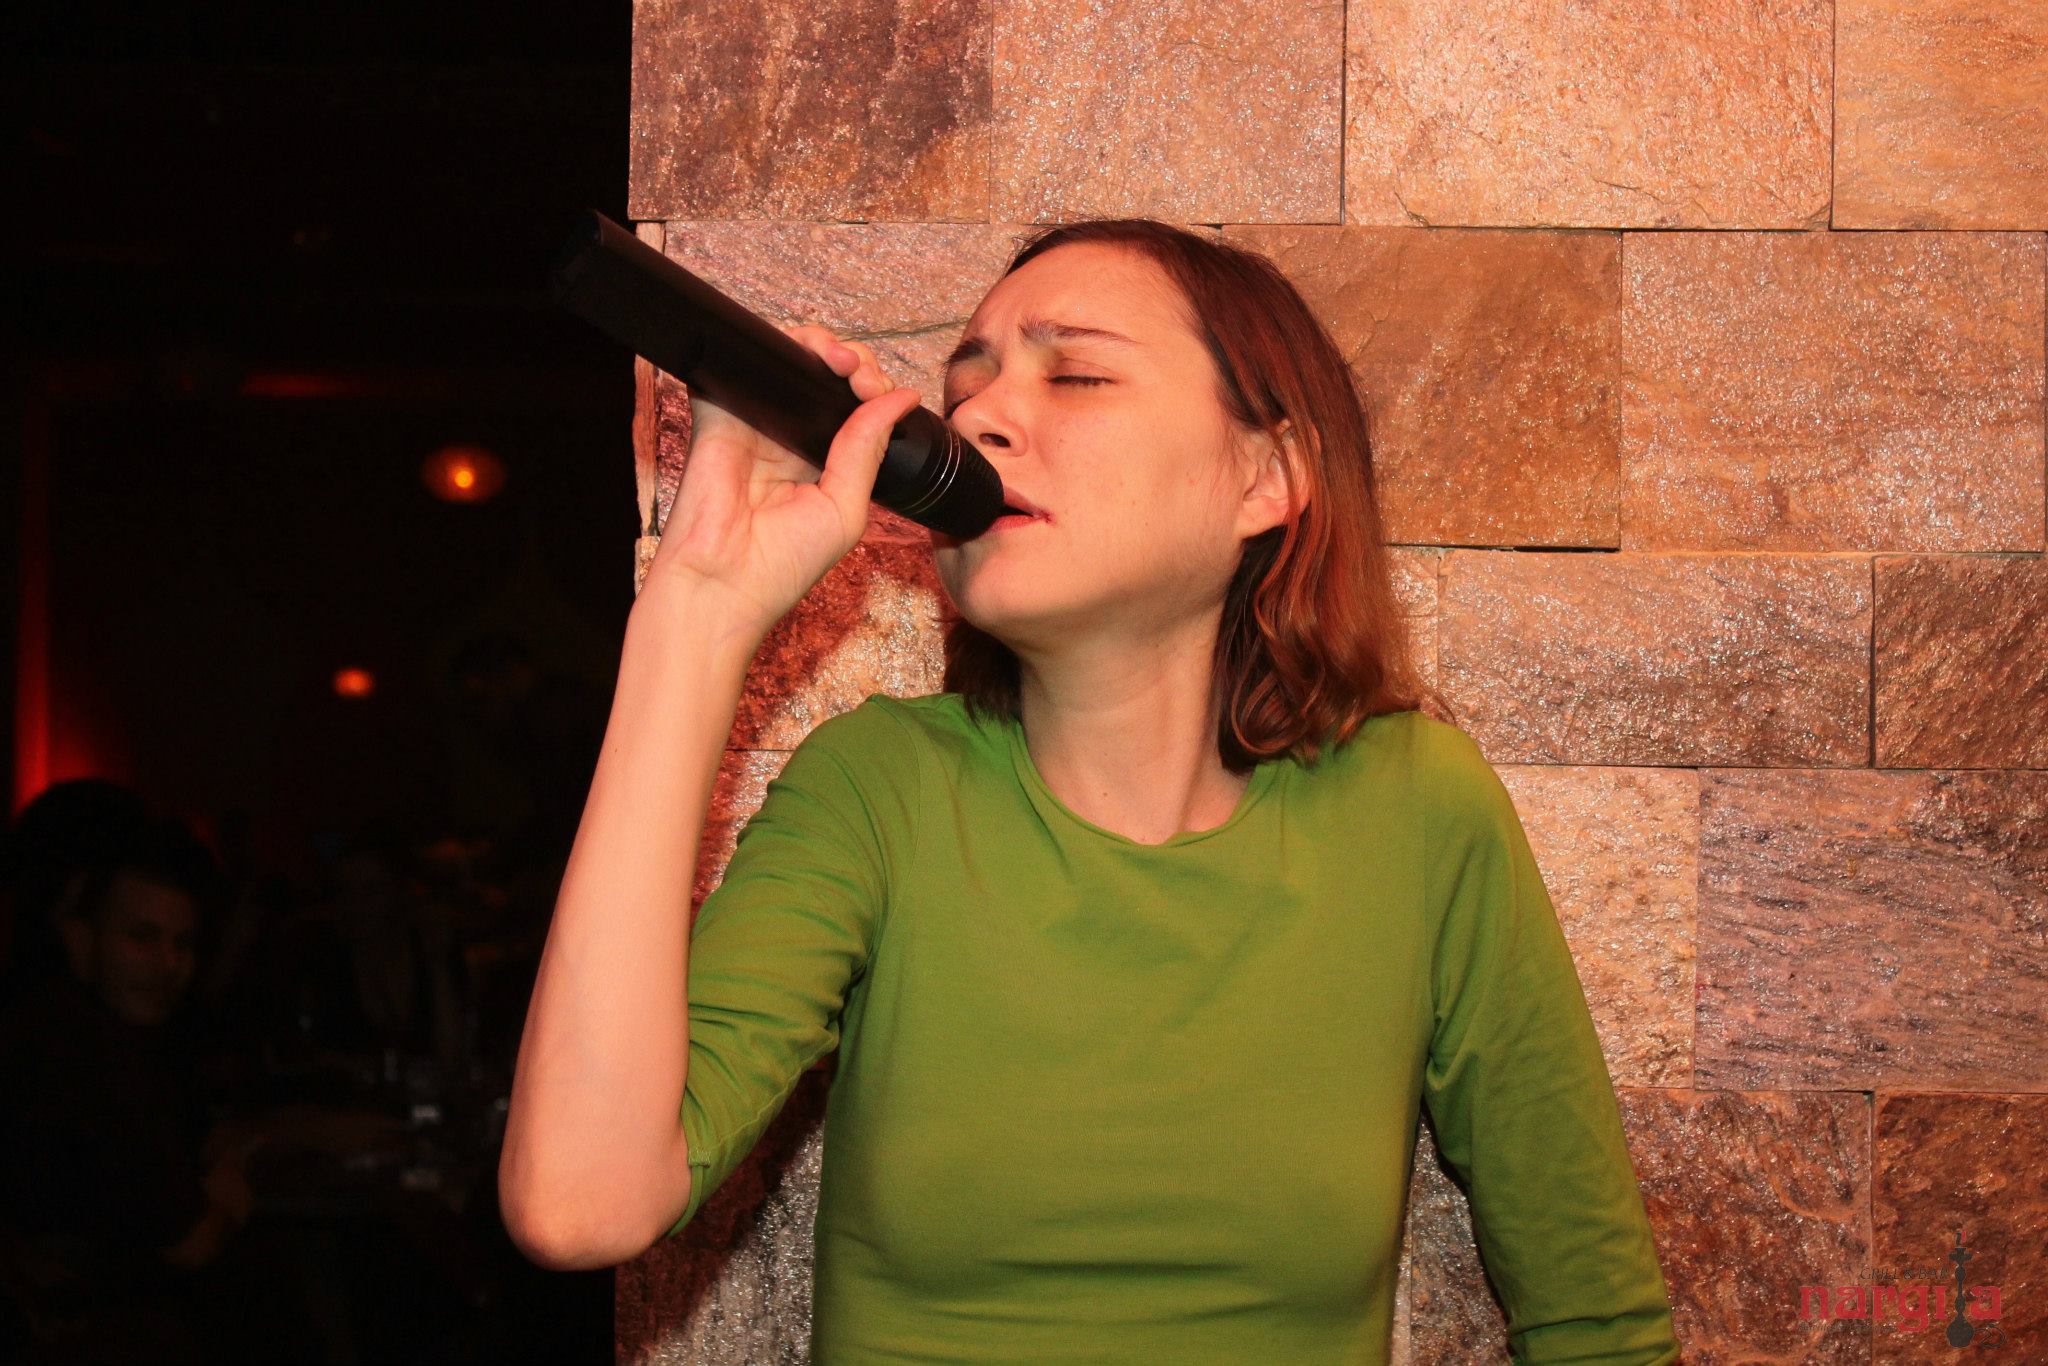 Ultima fotografie postata de Mica pe Facebook, dupa o seara la karaoke, pe 3 ianuarie